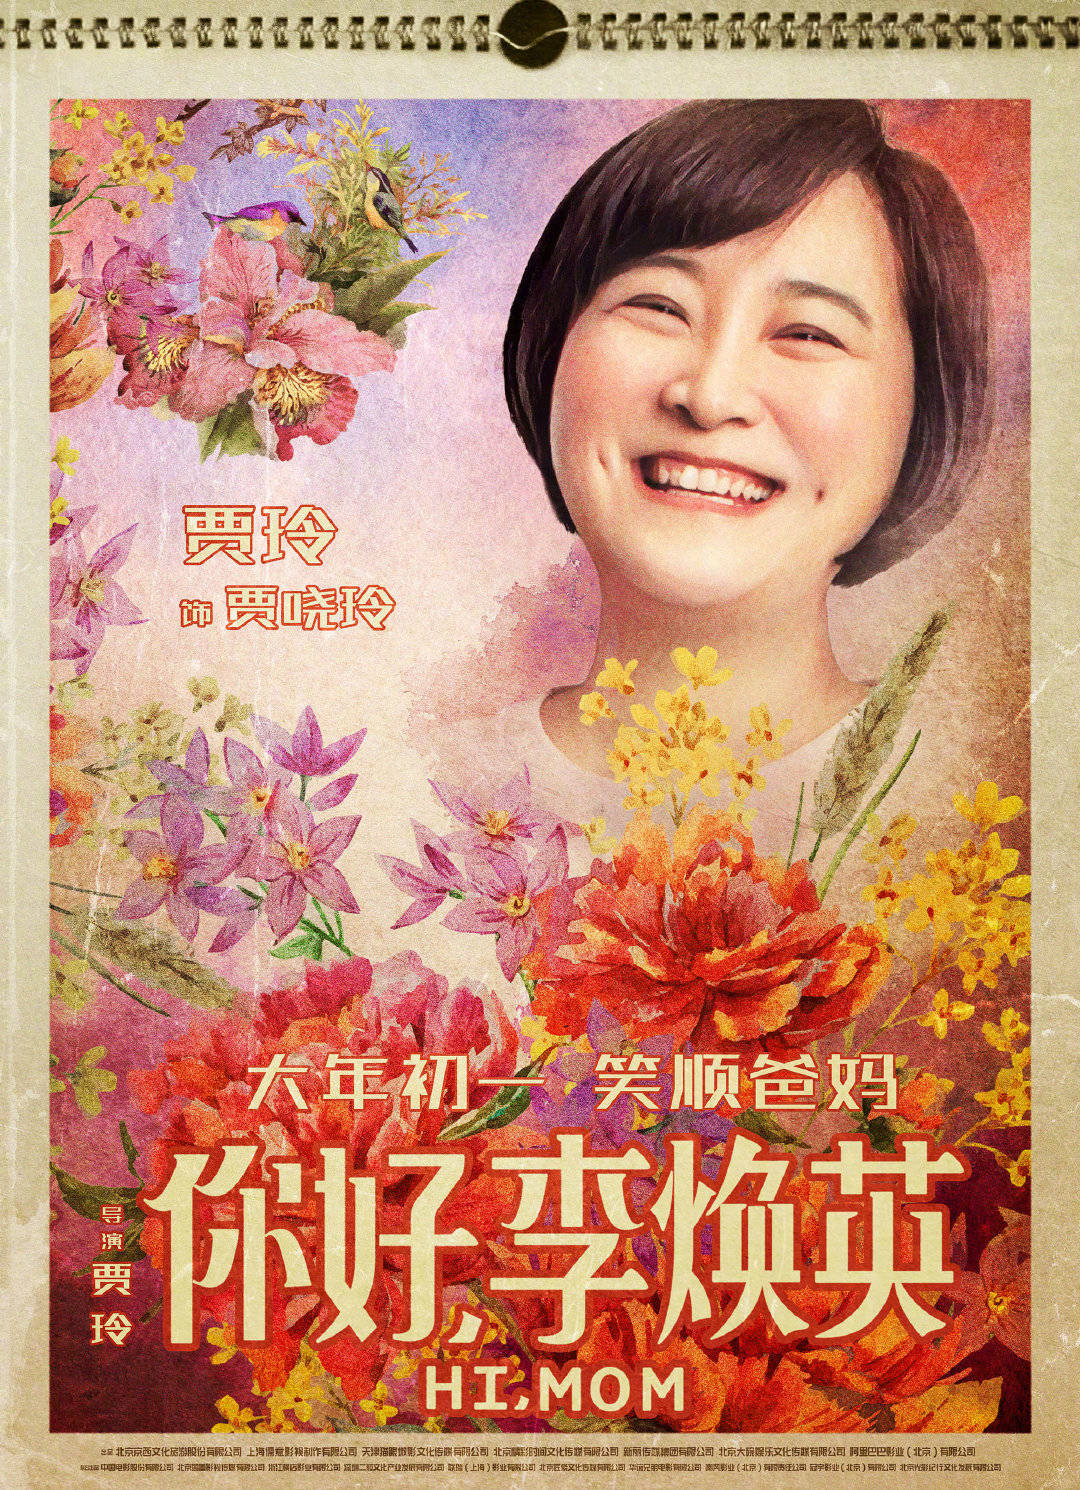 “你好，李焕英”发布了黄海设计日历海报贾凌霄成人绘画娃娃沉腾的“坏笑容”让人爱不释手